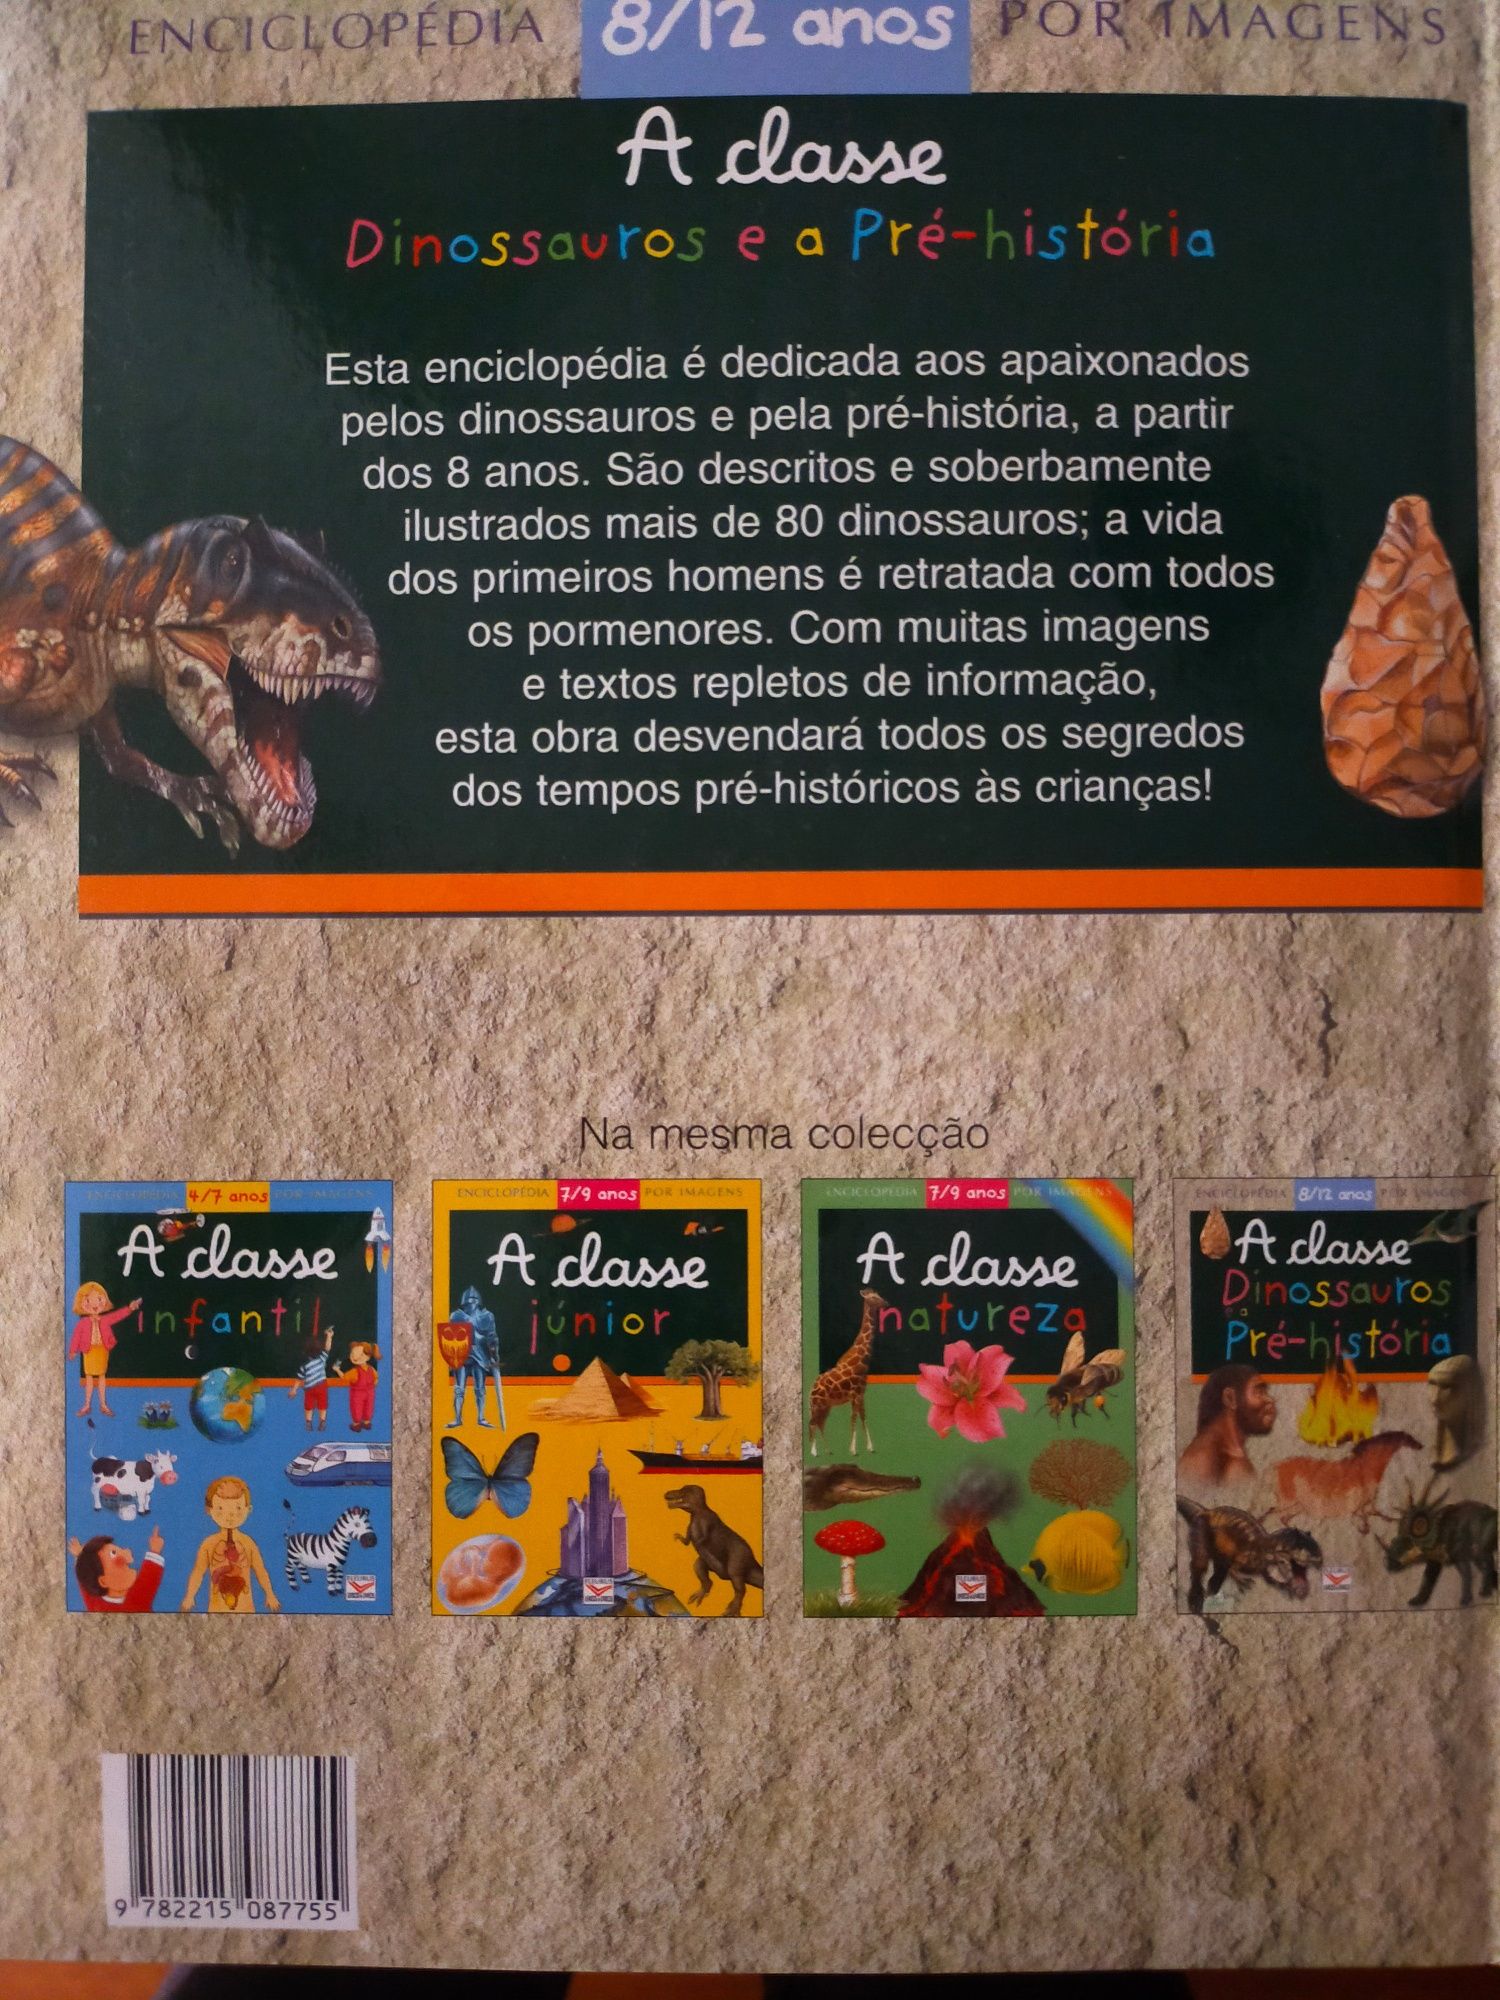 Enciclopédia por imagens 8-12 anos
Dinossauros e a Pré-história